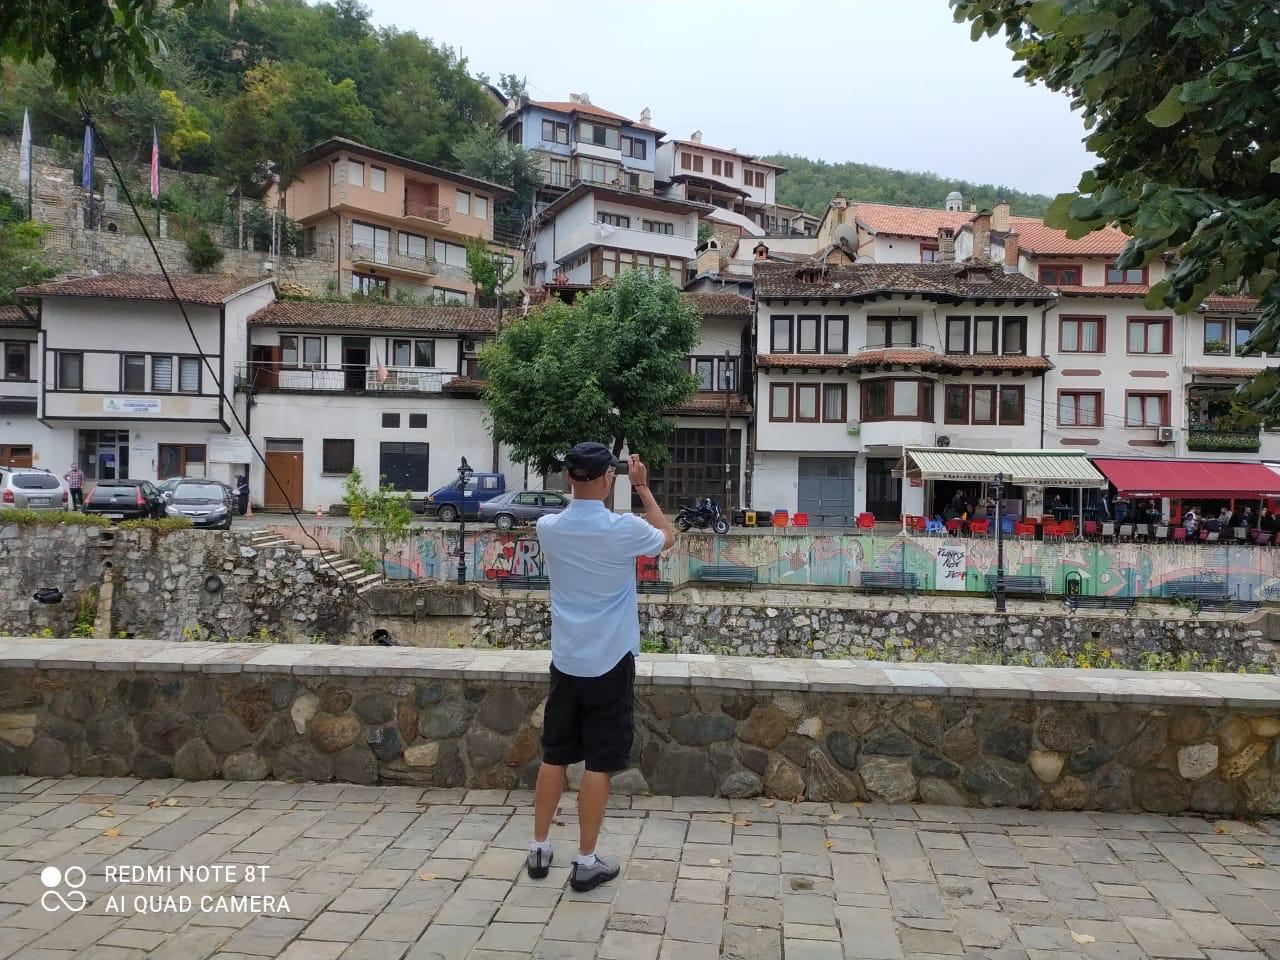  Day 9 Day tour of Prizren